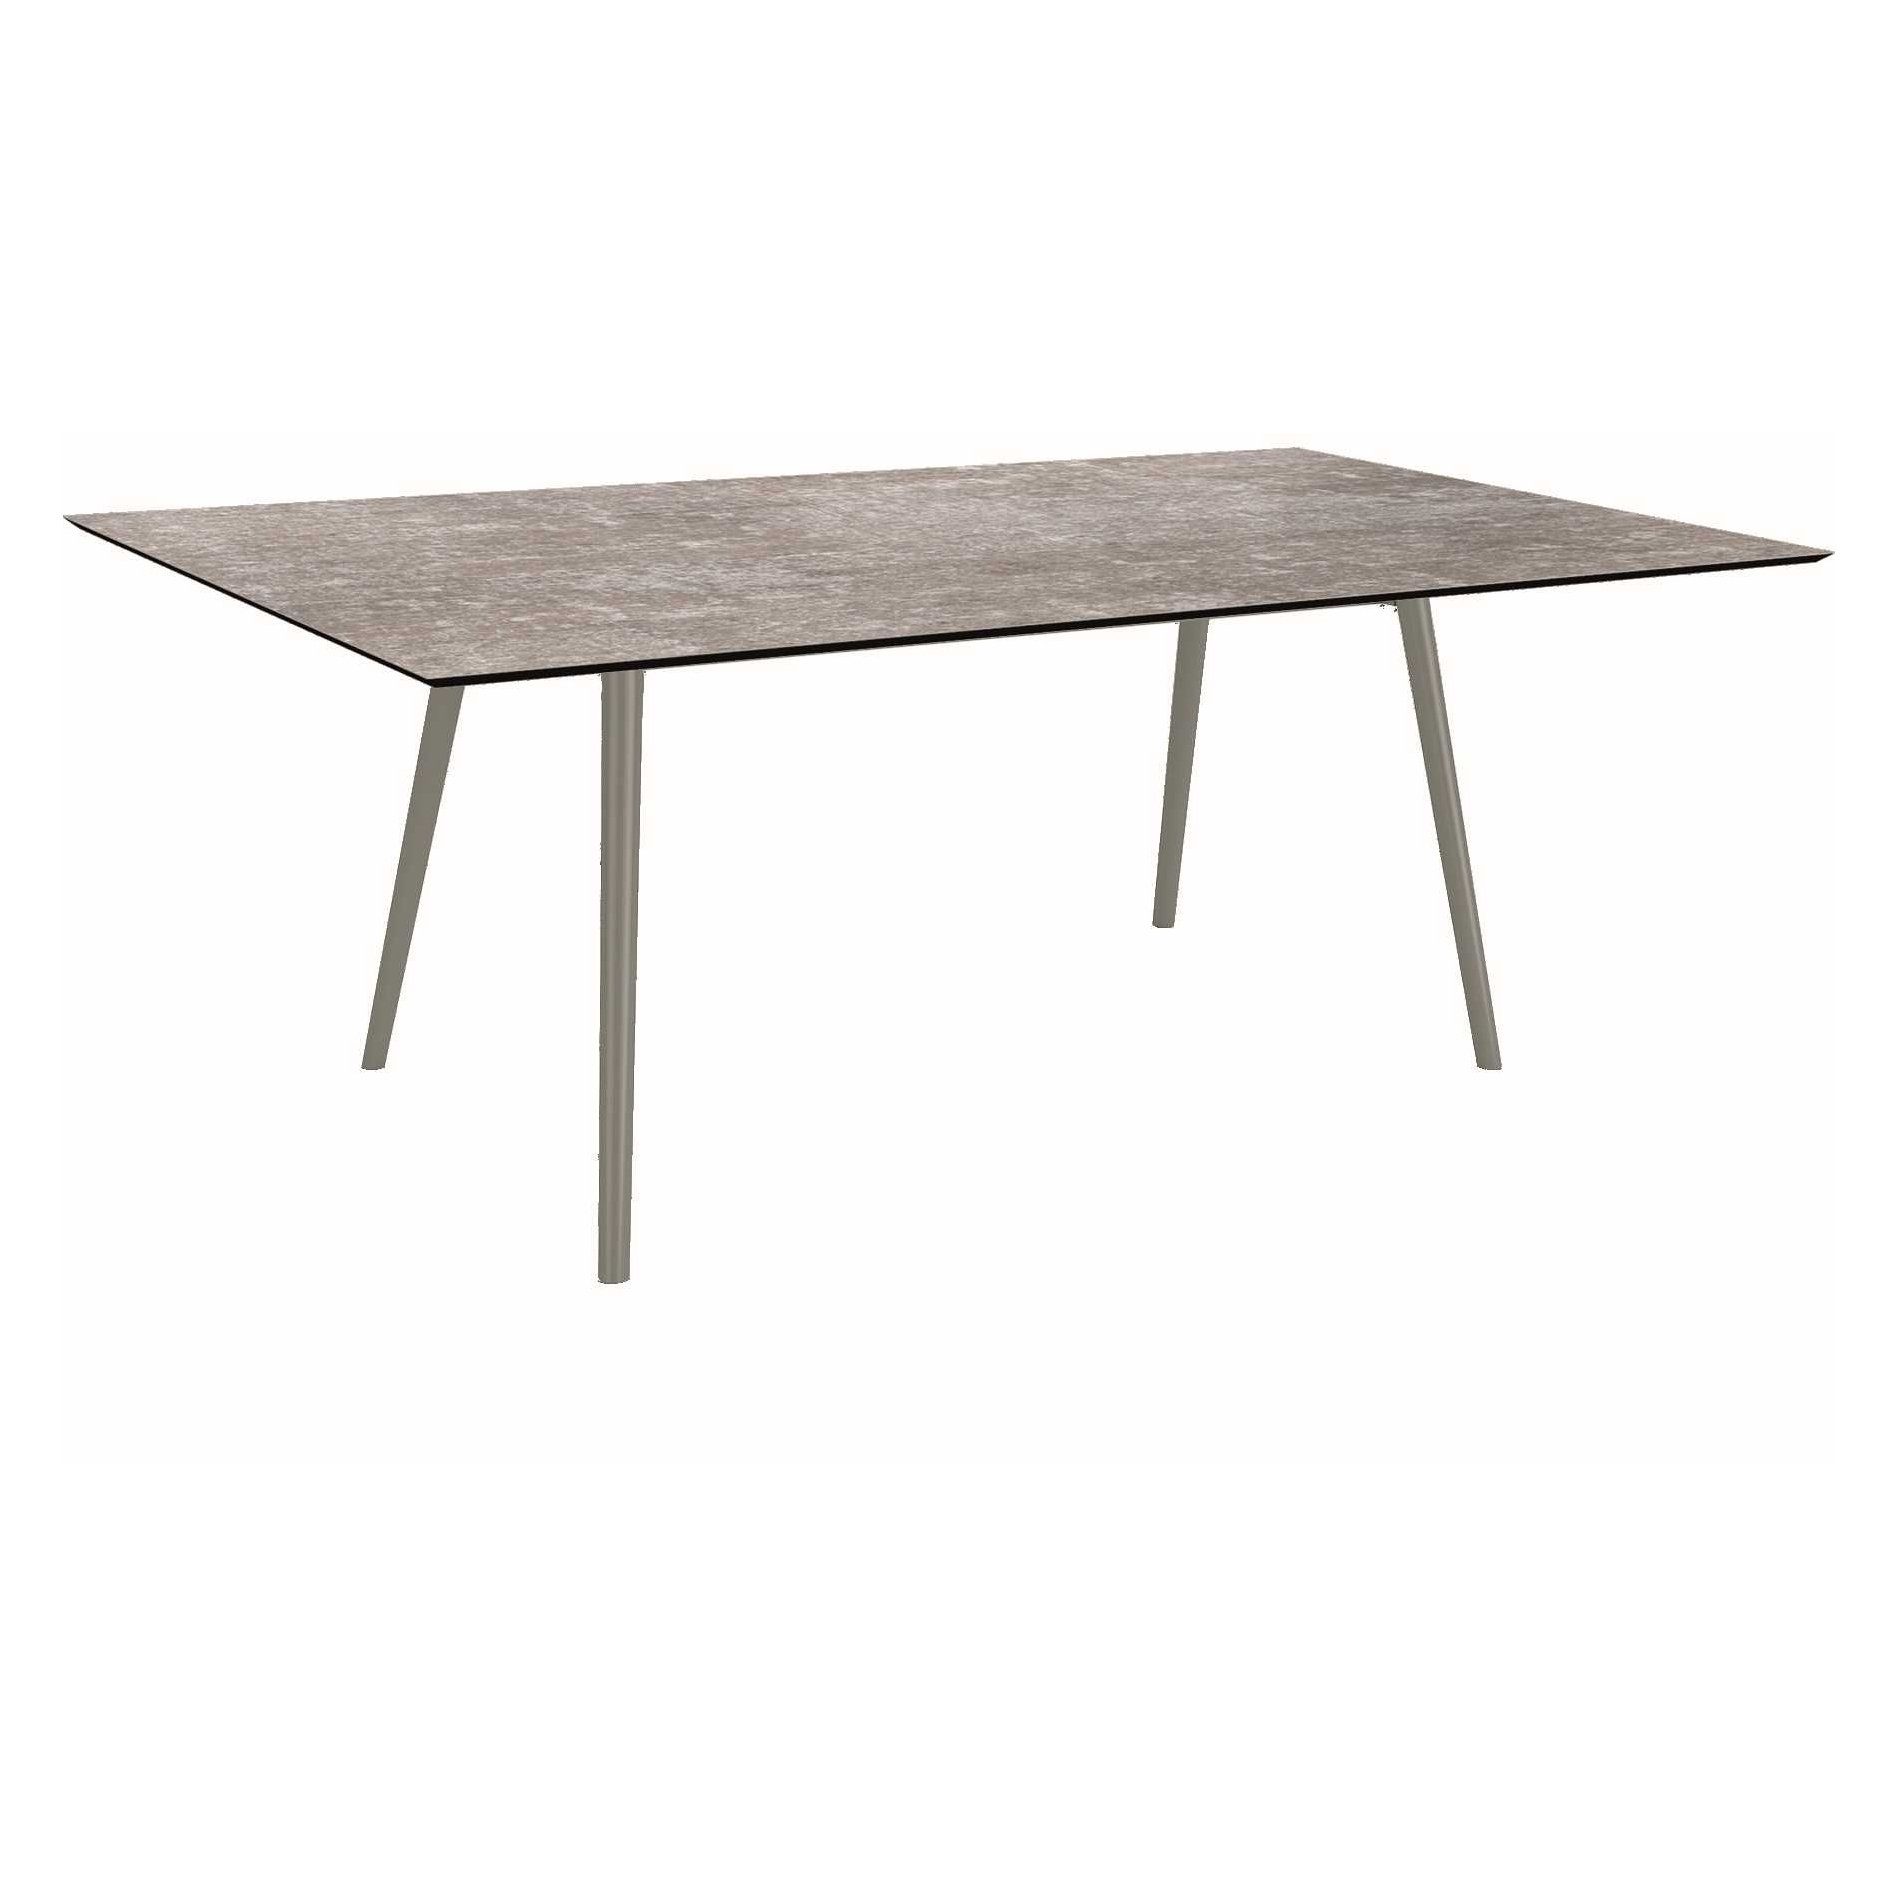 Stern Tisch "Interno", Größe 180x100cm, Alu graphit, Rundrohr, Tischplatte HPL Metallic Grau